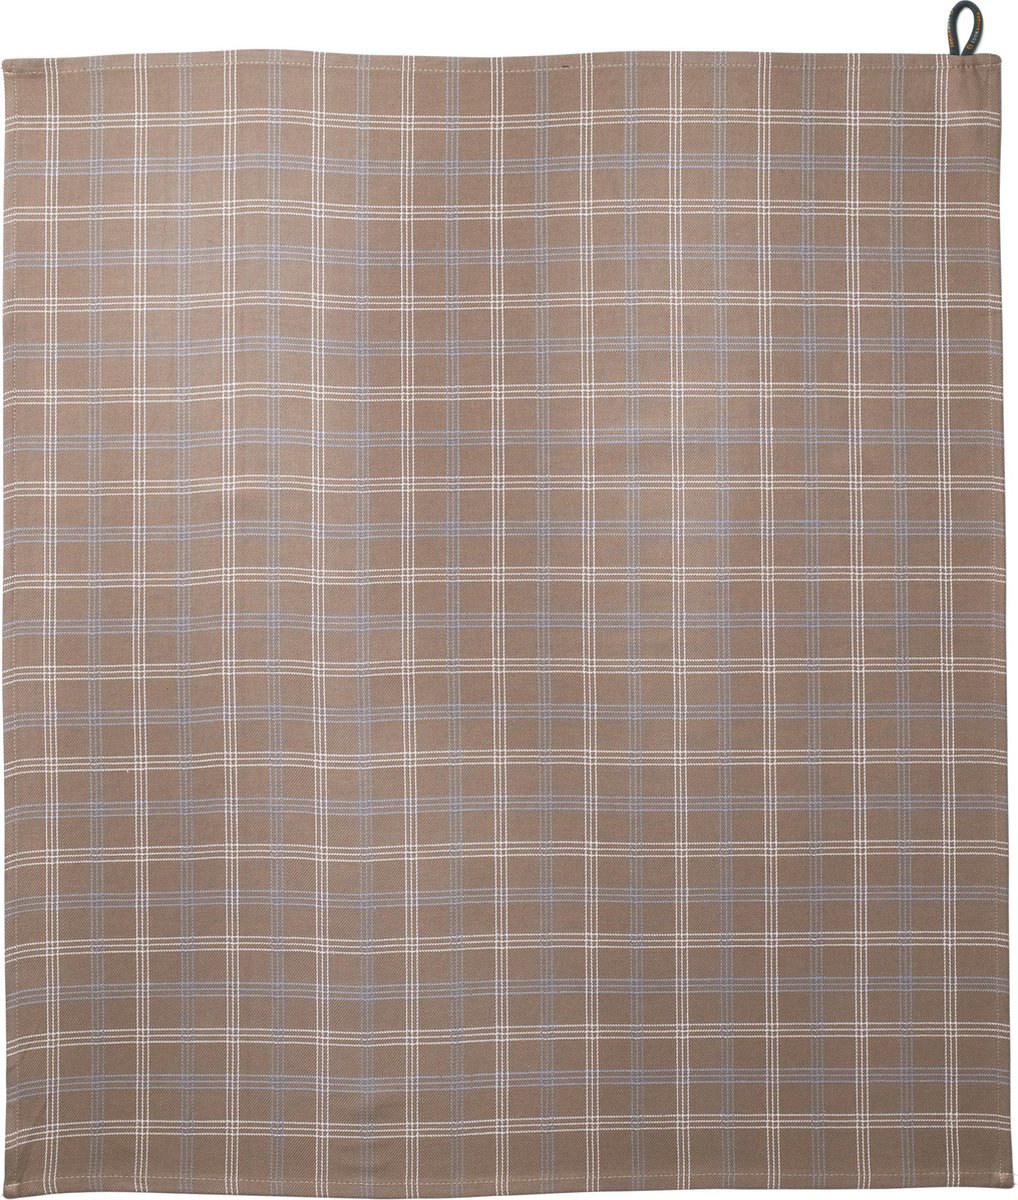 Cookaware Theedoek - Beige geruit (65x70 cm)